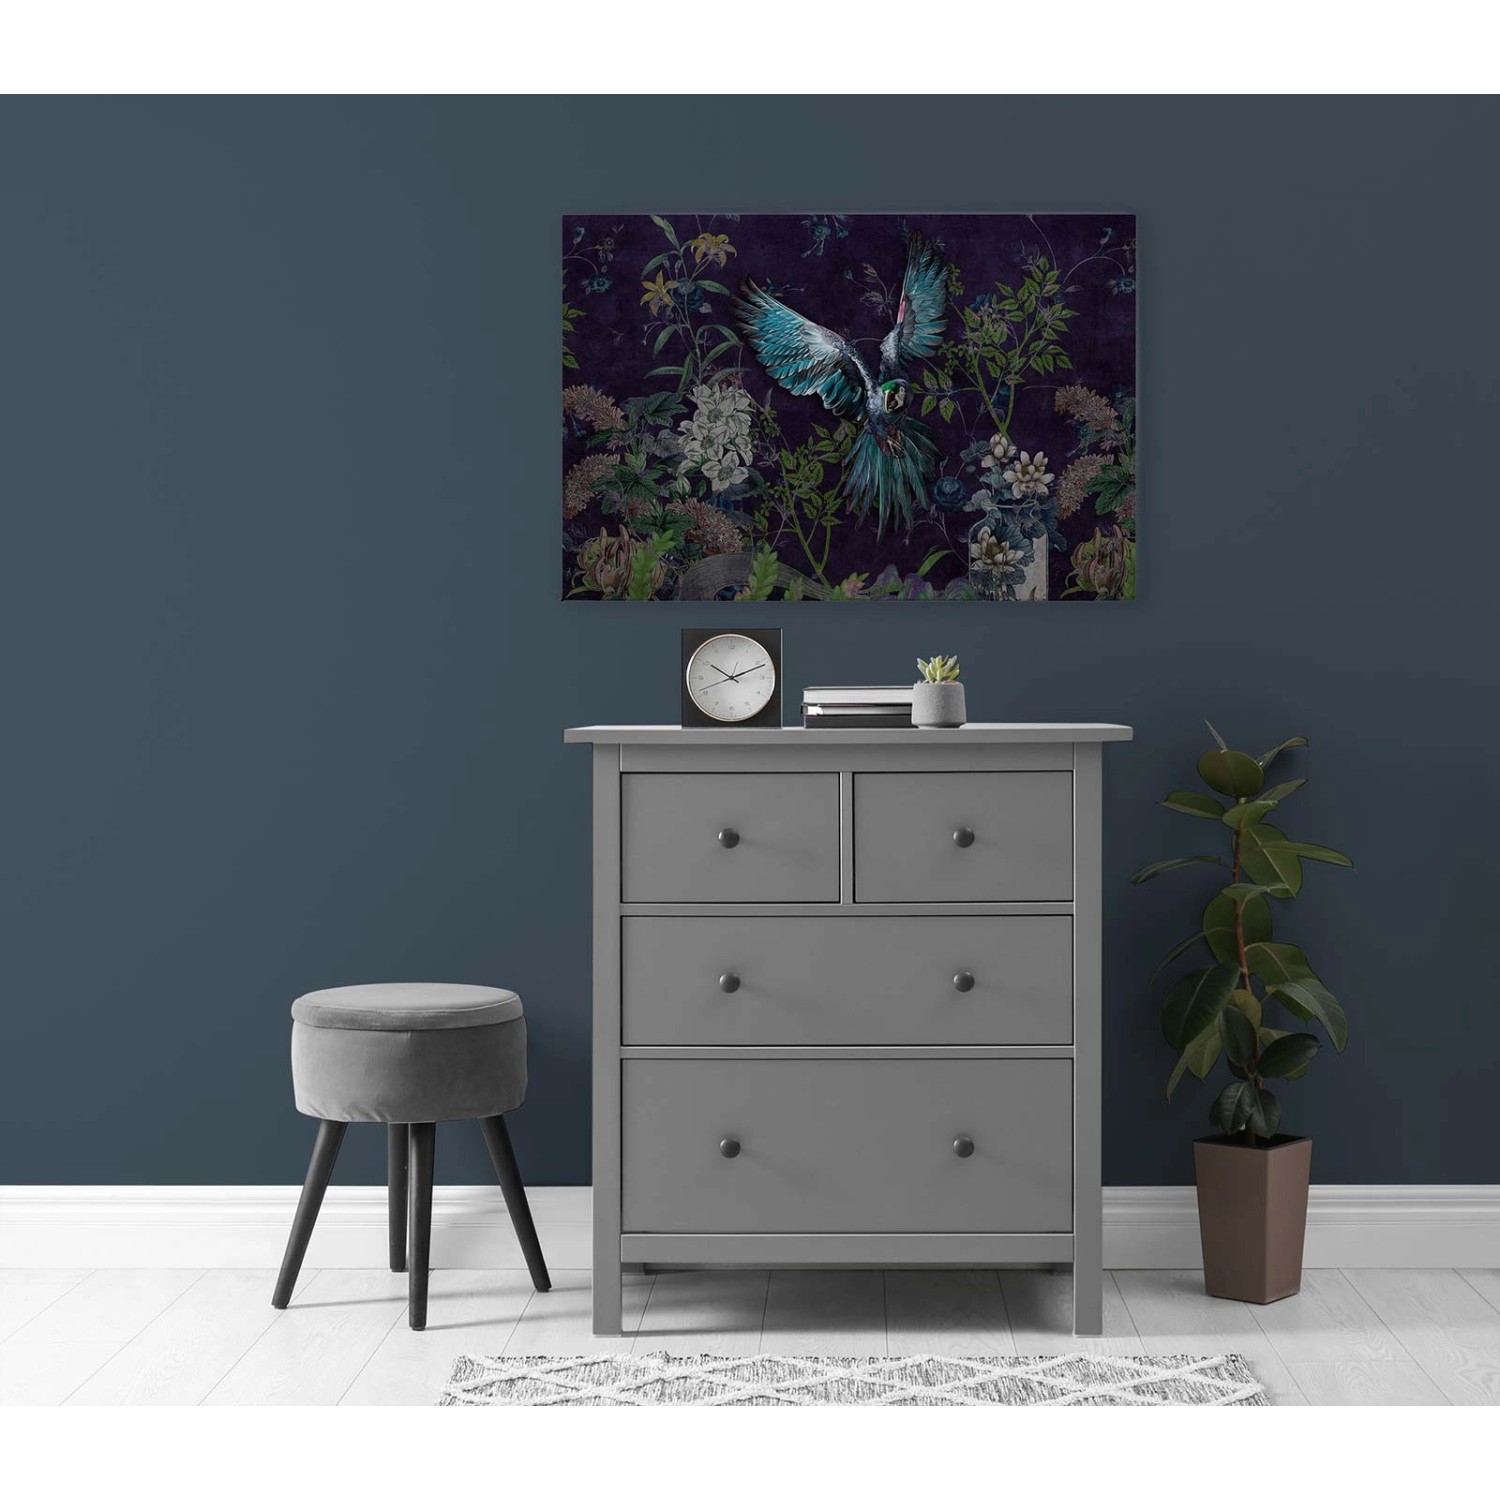 Bricoflor Leinwandbild Papagei In Dunkelblau Dschungel Bild 90 X 60 Cm Modernes Wandbild Mit Vogel Und Blumen Für Schlaf